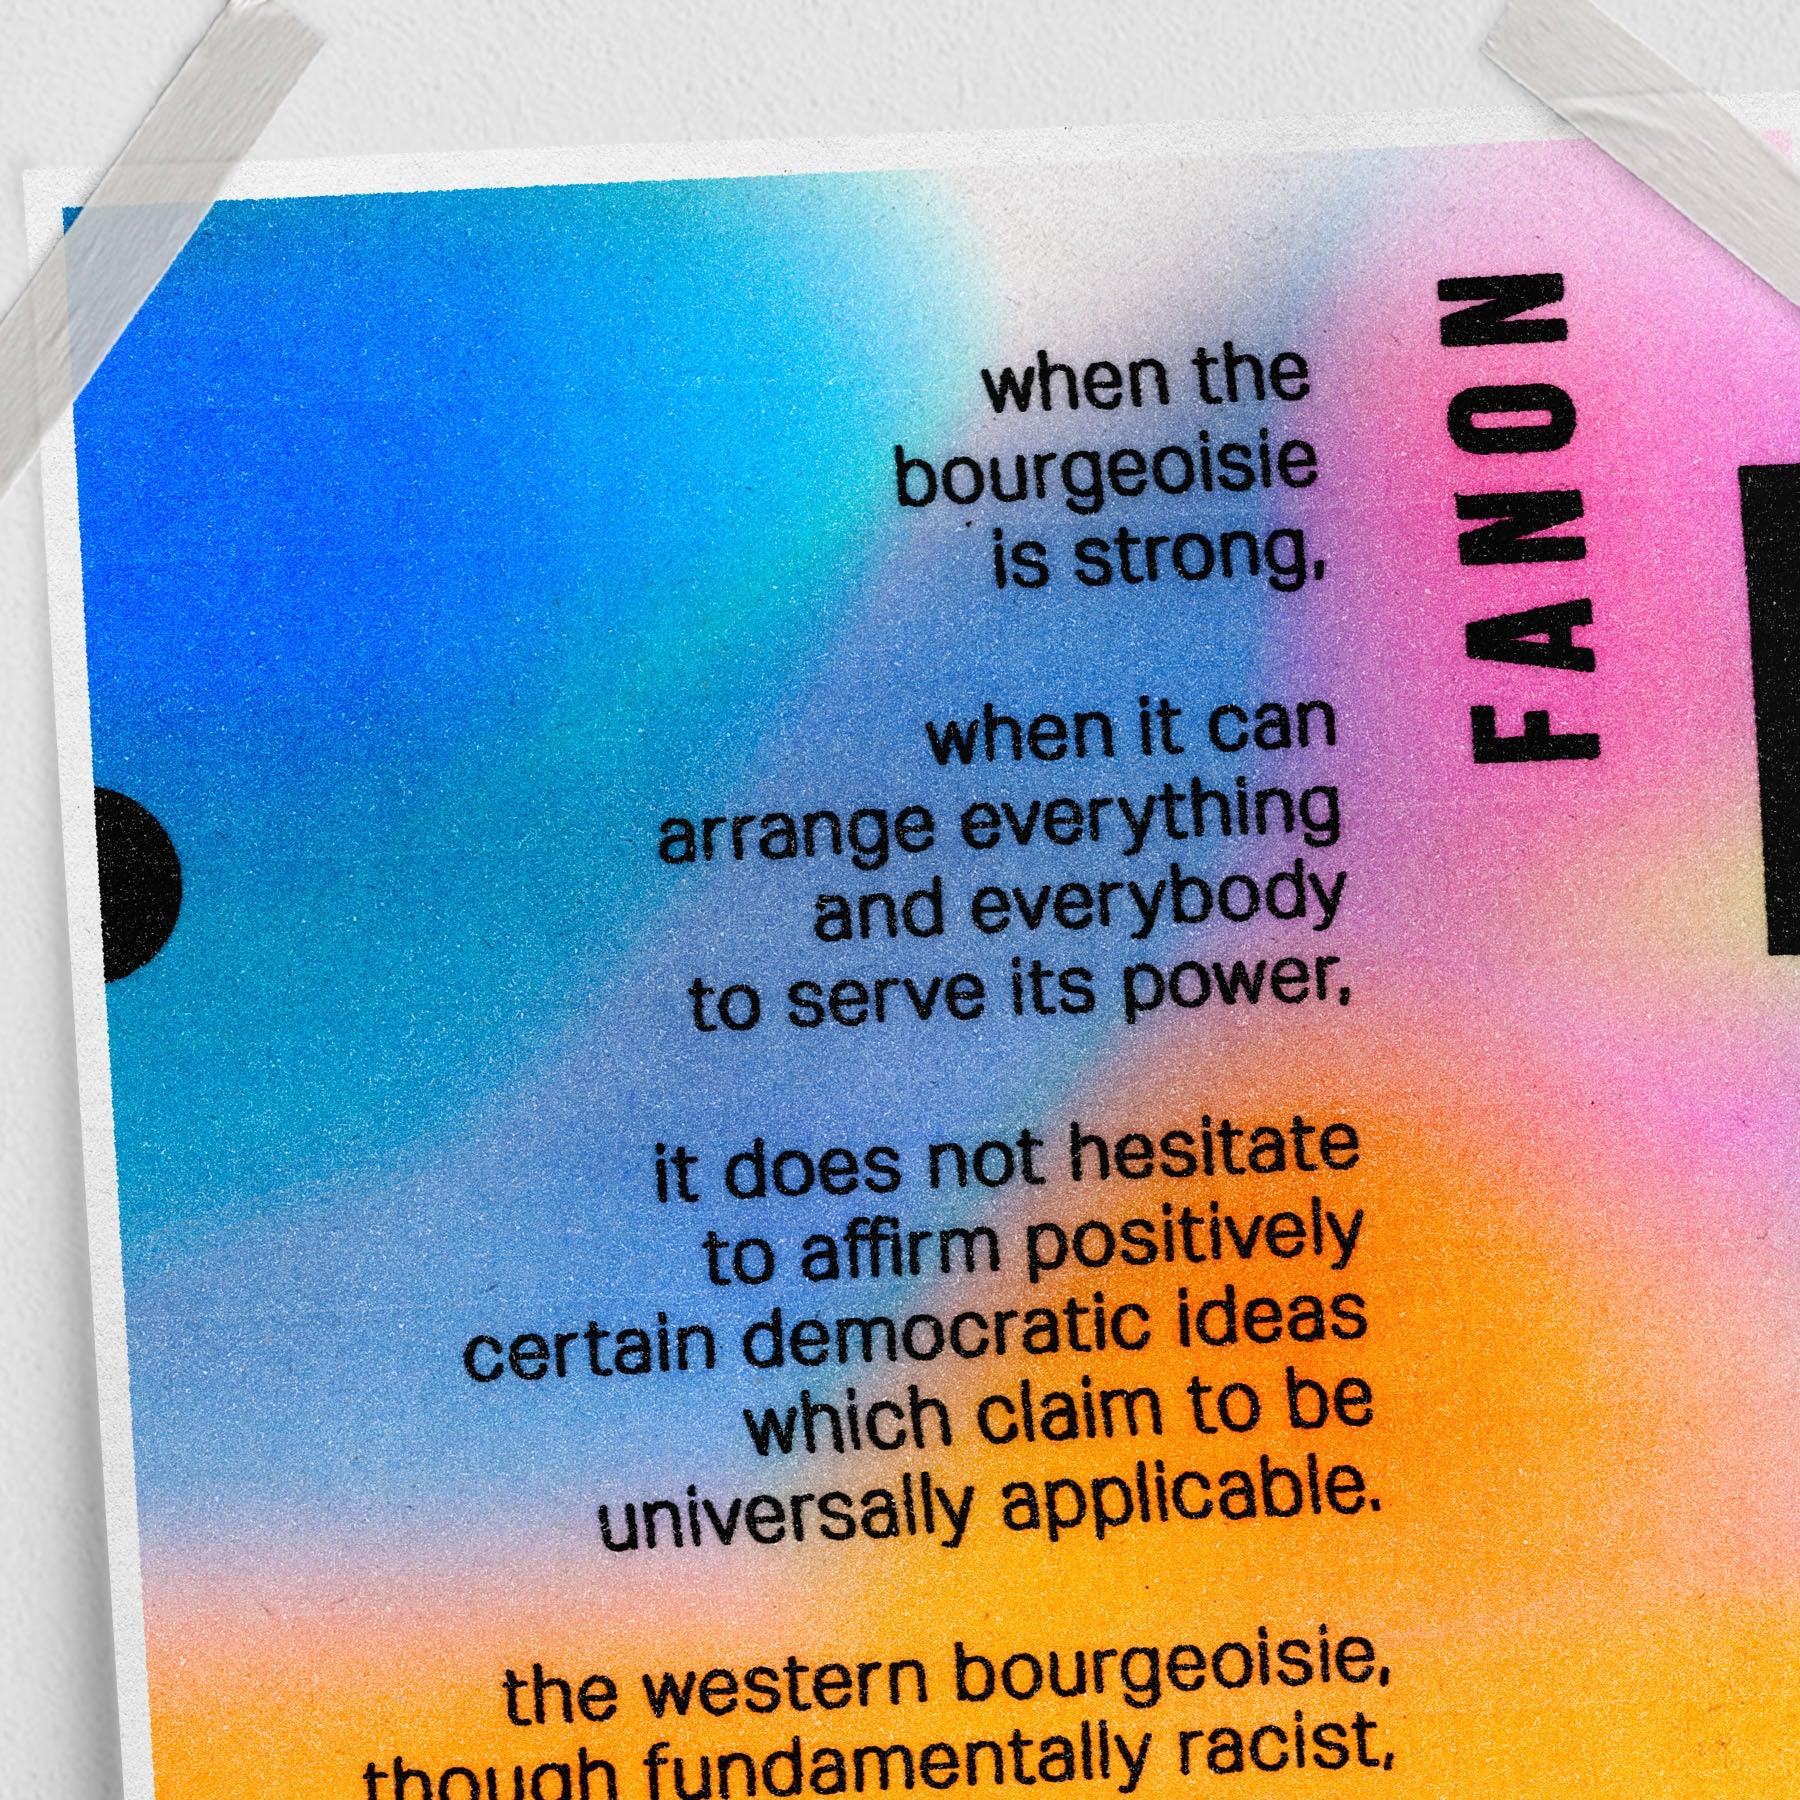 Frantz Fanon quote (11 x 17 Poster print) - Color Collective Press